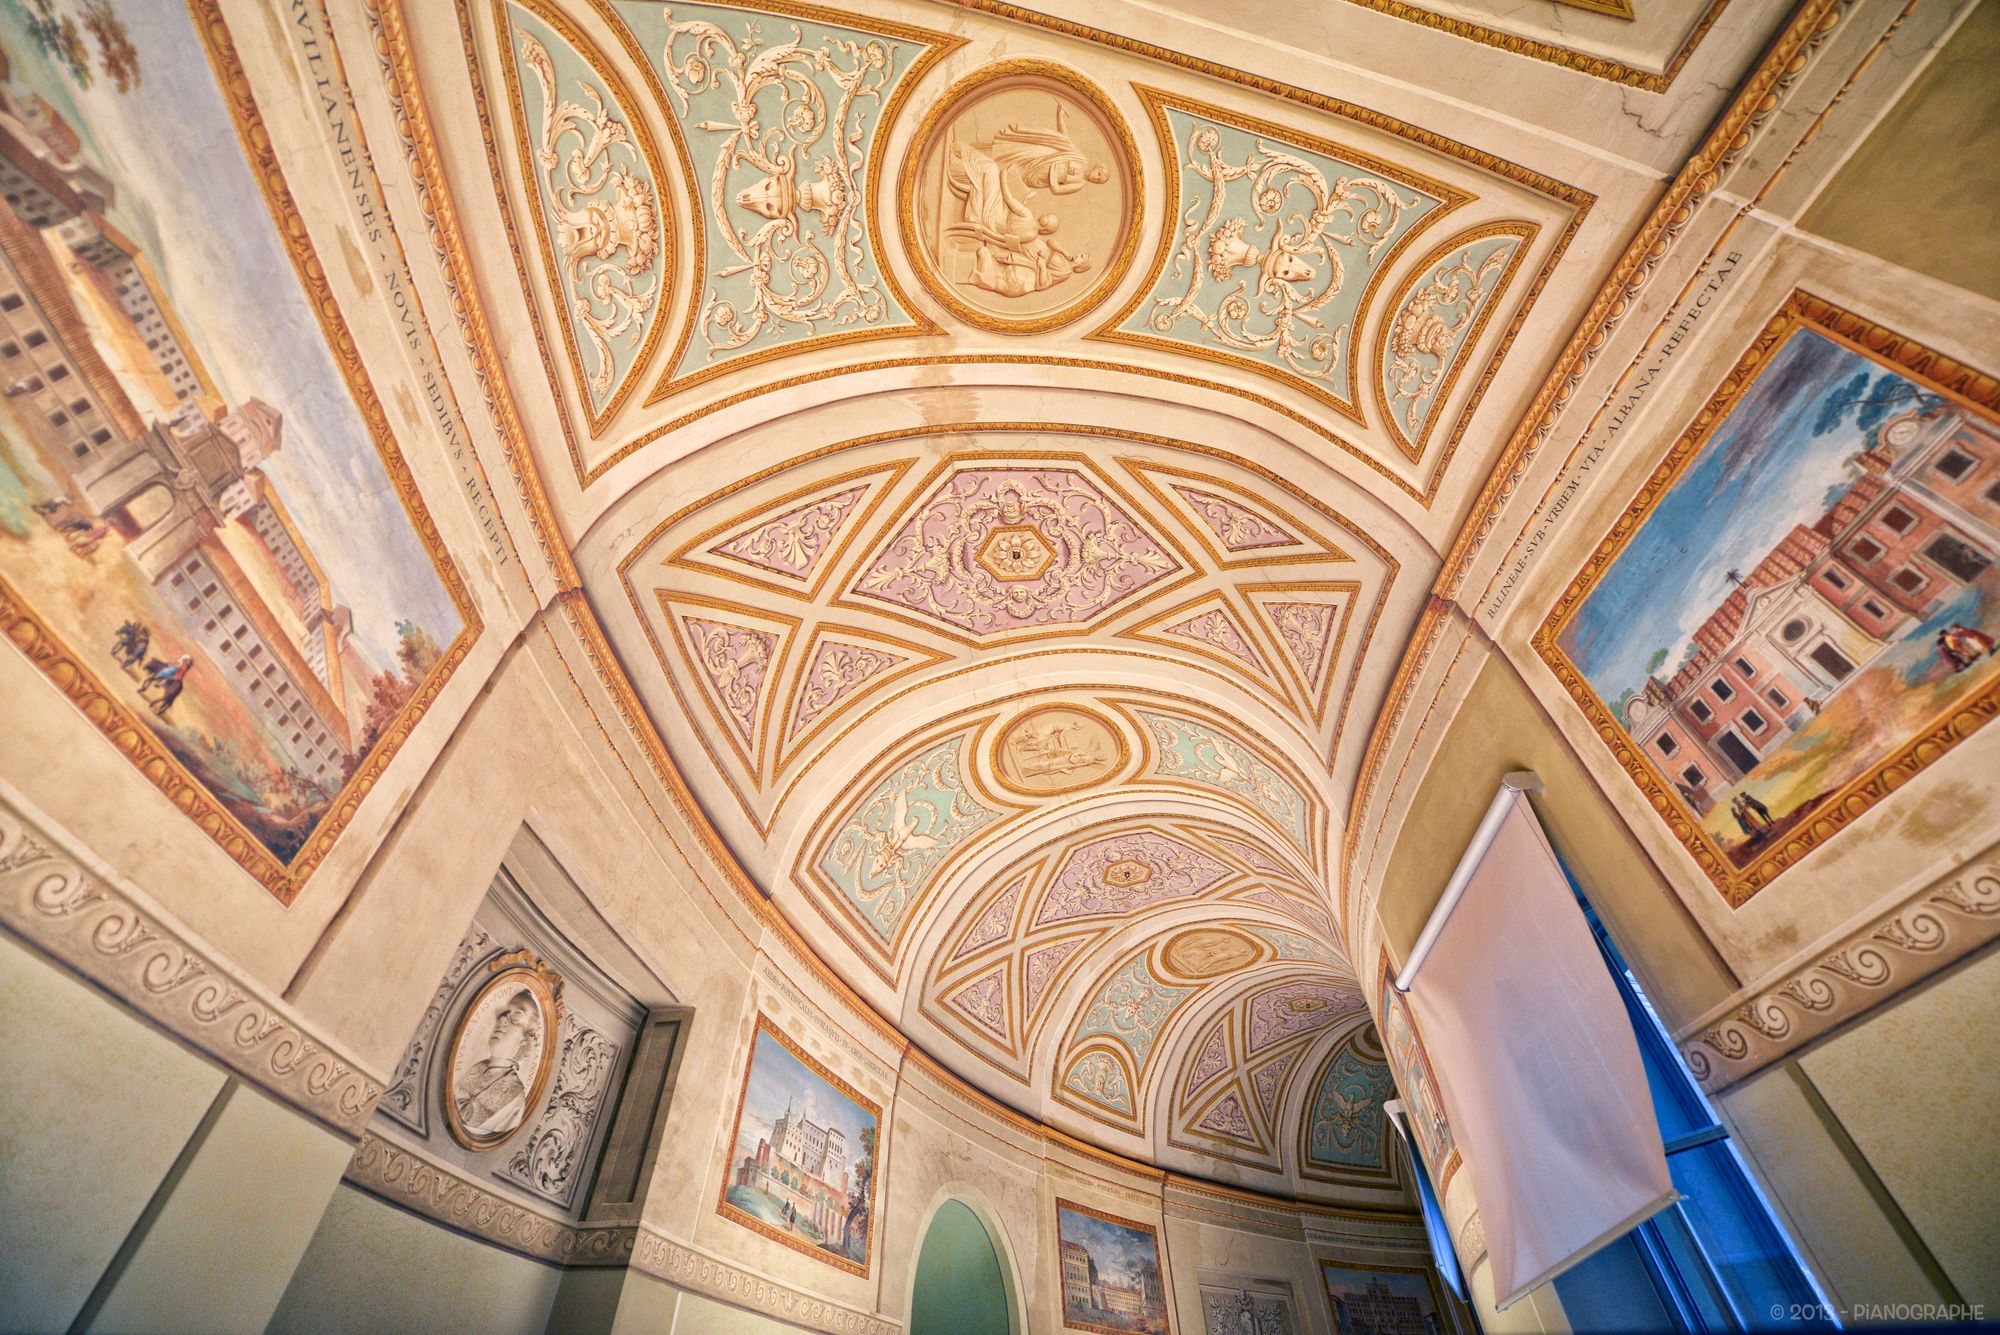 Couloir du musée arborant de nombreux ornements, voûte peinte, tableaux peints à même les murs en trompe-l'œil